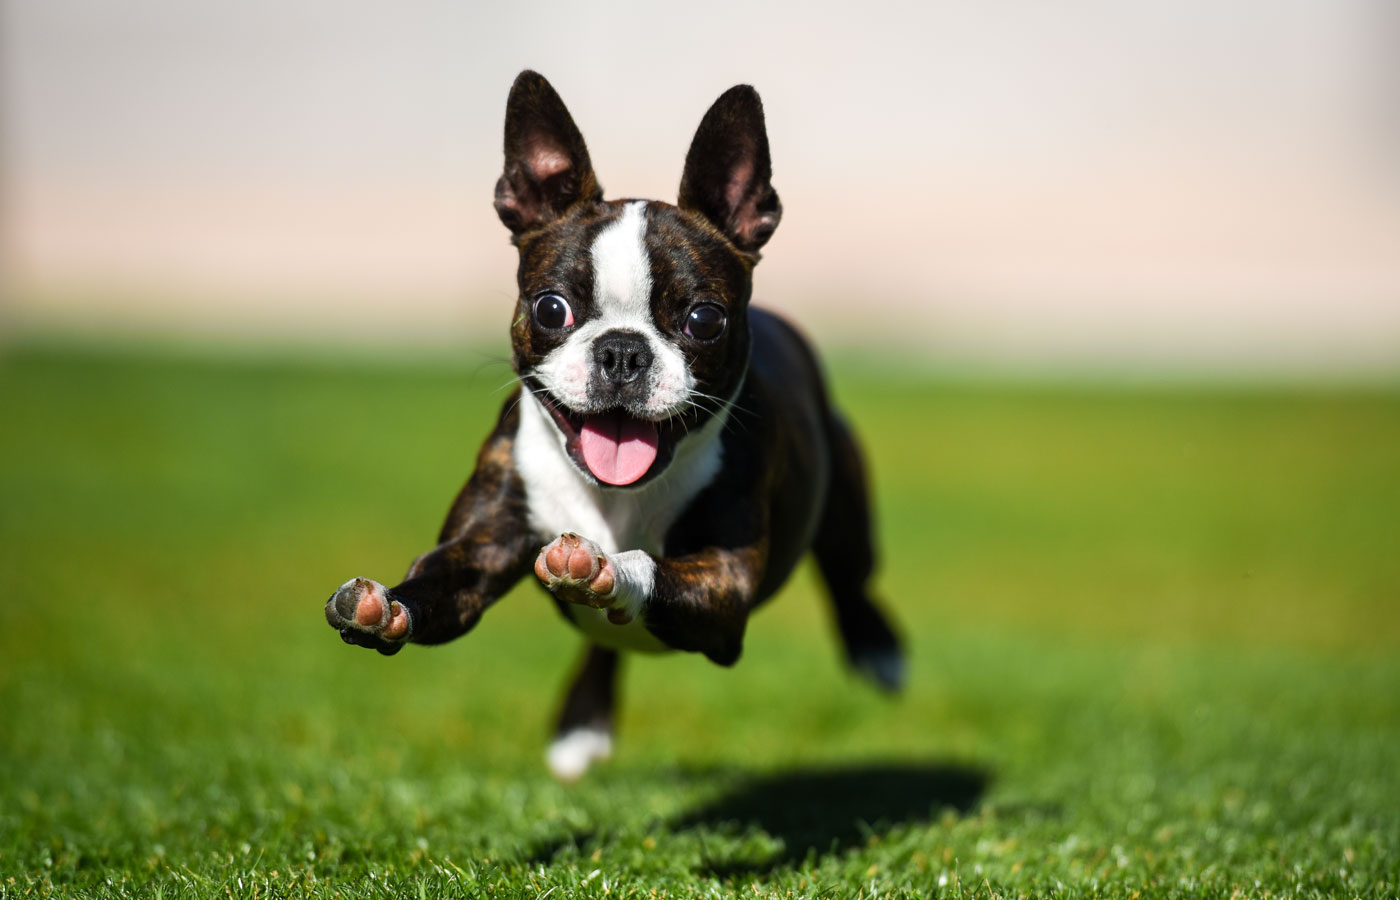 Boston terrier puppy running through the yard.